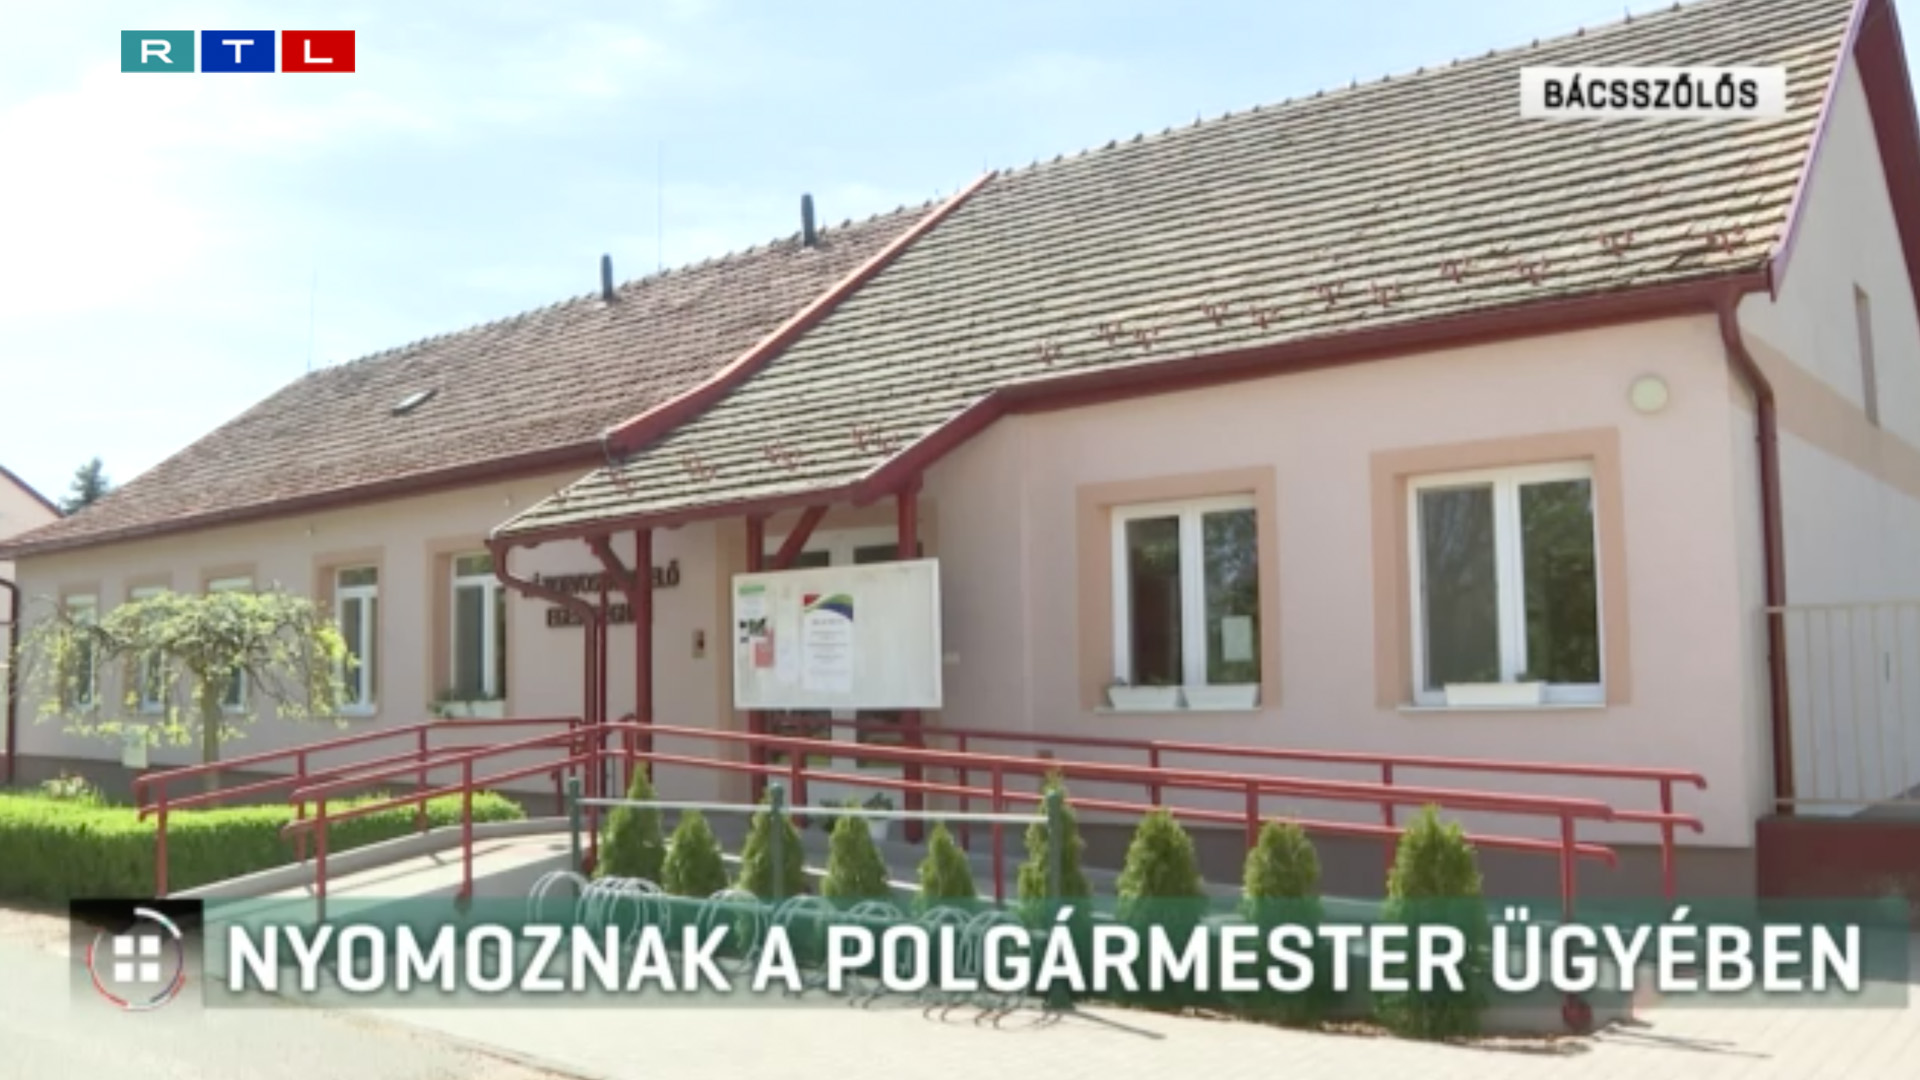 Visszaköltözött az uniós pénzből felújított orvosi szolgálati lakásból az önkormányzati lakásába a bácsszőlősi fideszes polgármester